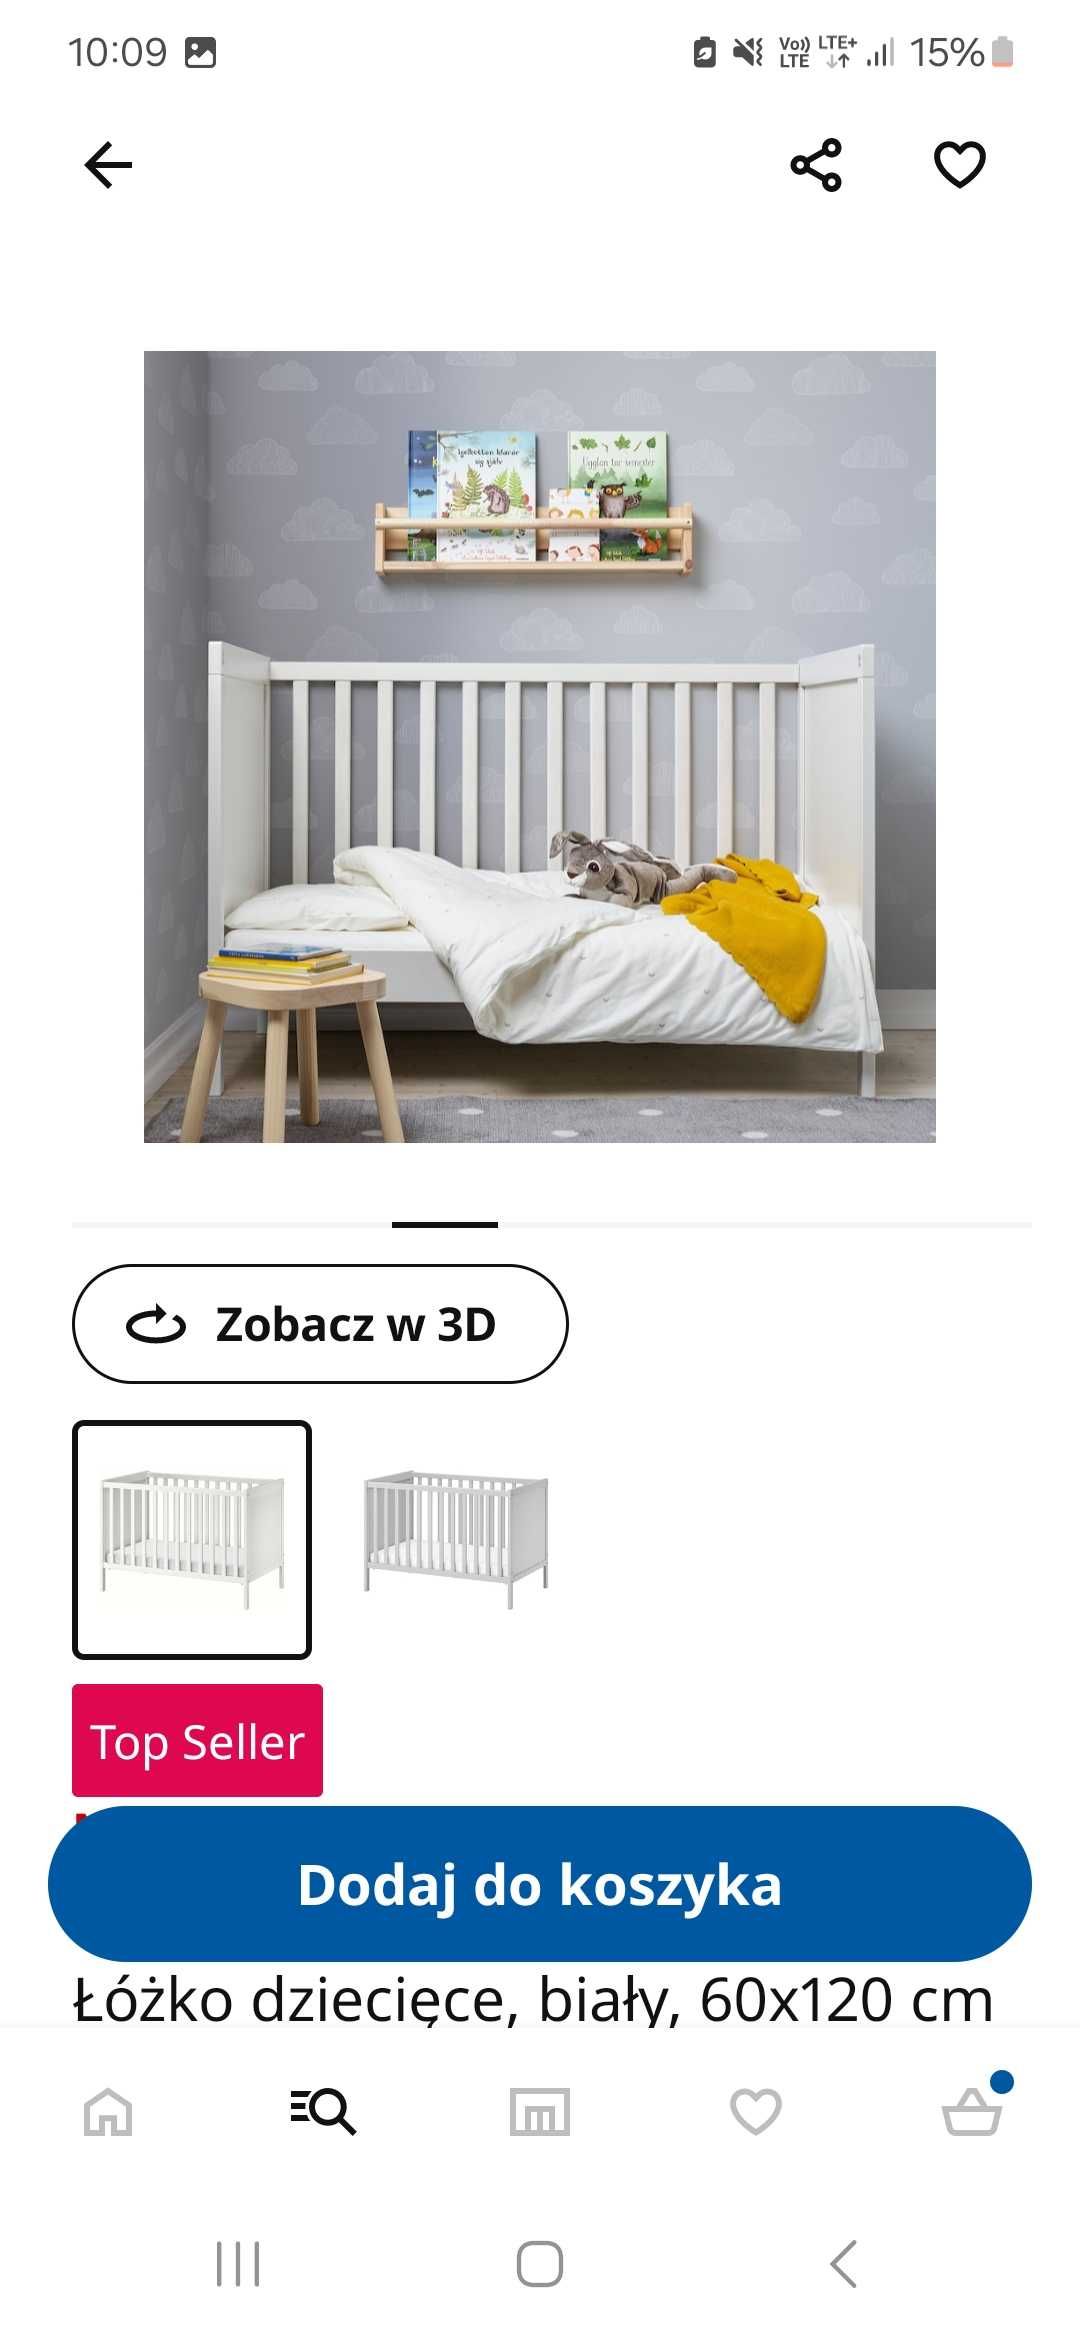 Łóżeczko sundvik Ikea